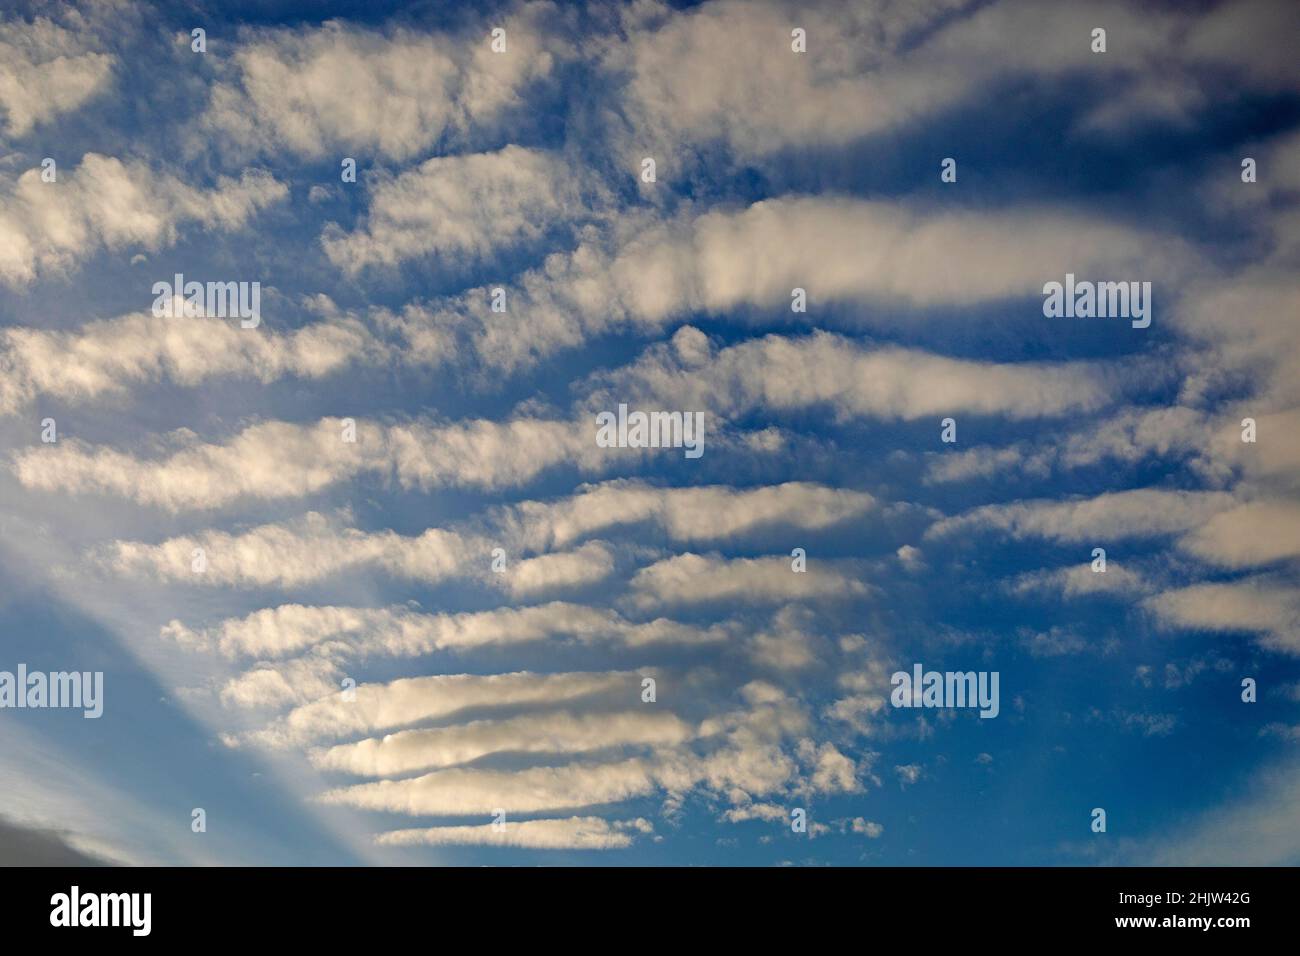 Rues nuageuses dans le ciel bleu, un type de formation de nuages également connu sous le nom de rouleaux convectifs horizontaux Banque D'Images